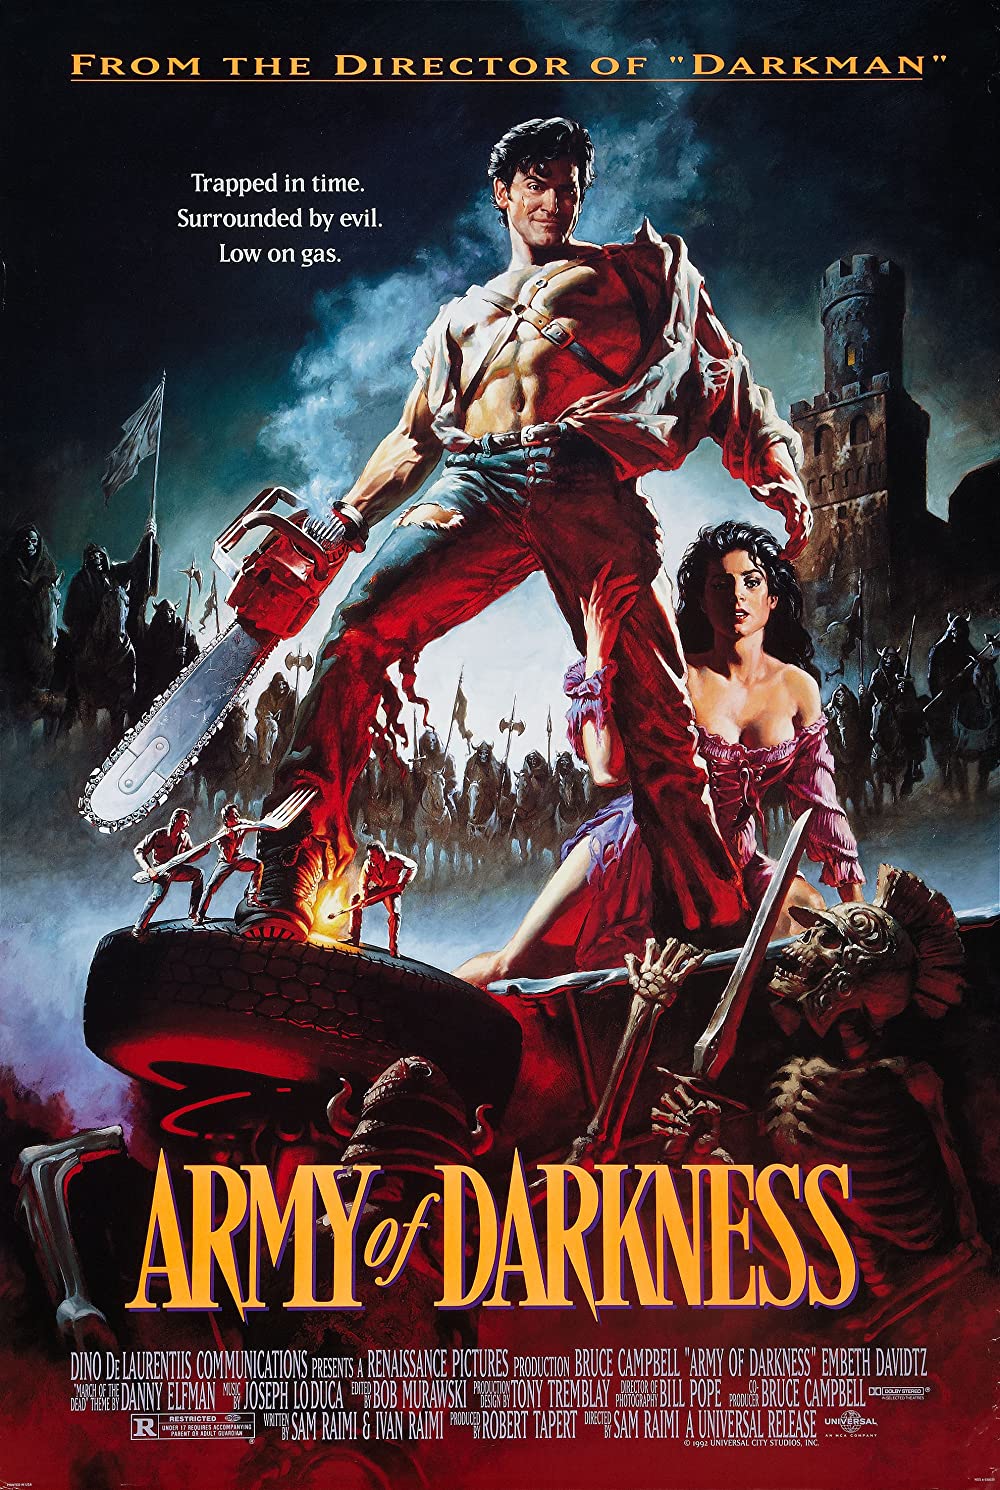 Filmbeschreibung zu Army of Darkness